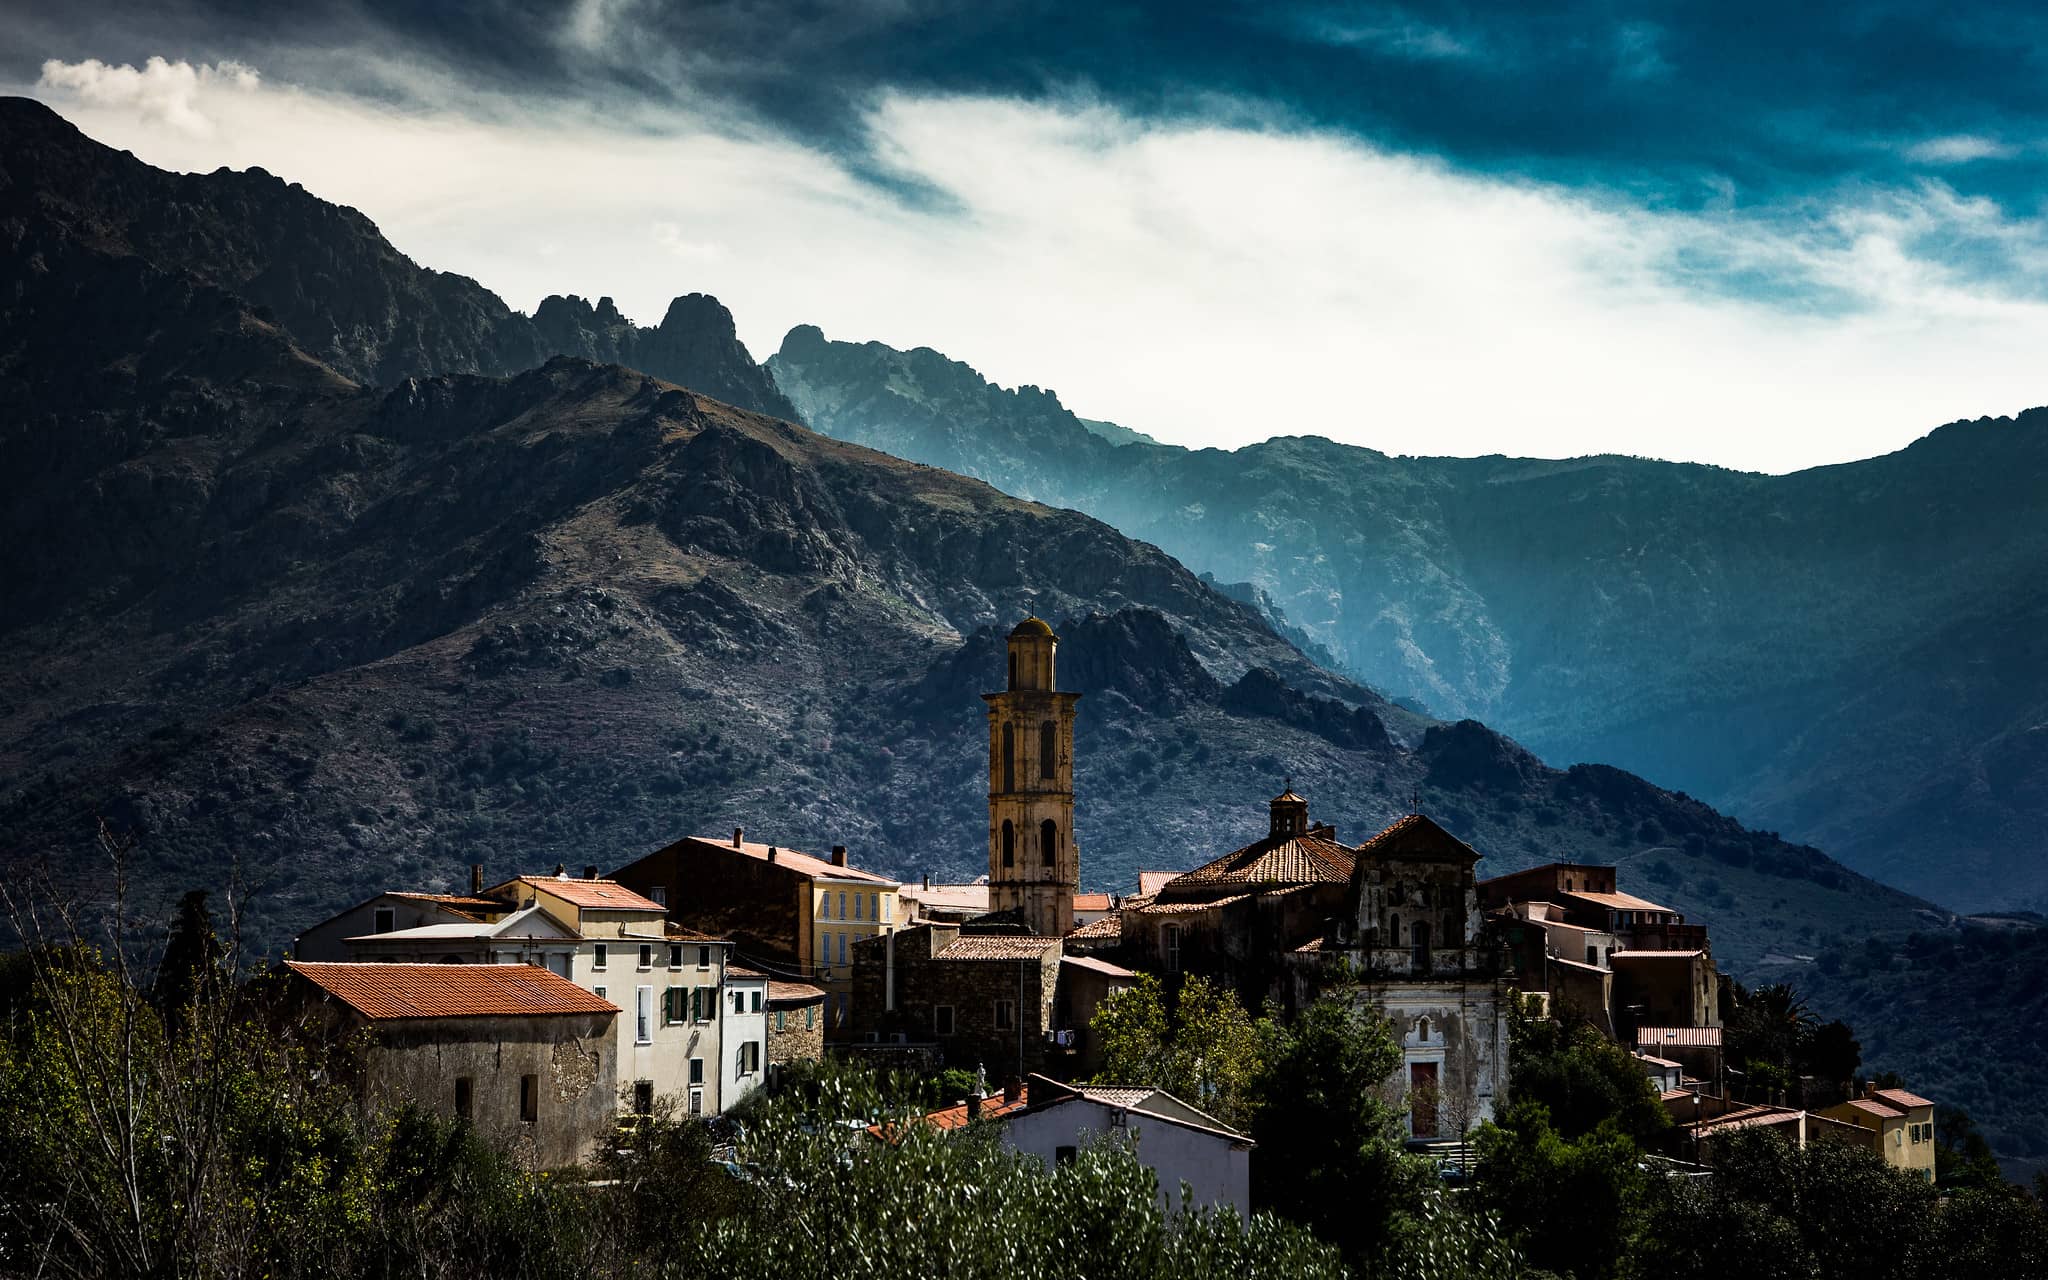 Paysage du village de Montemaggiore avec des montagnes, habitations et du feuillage.